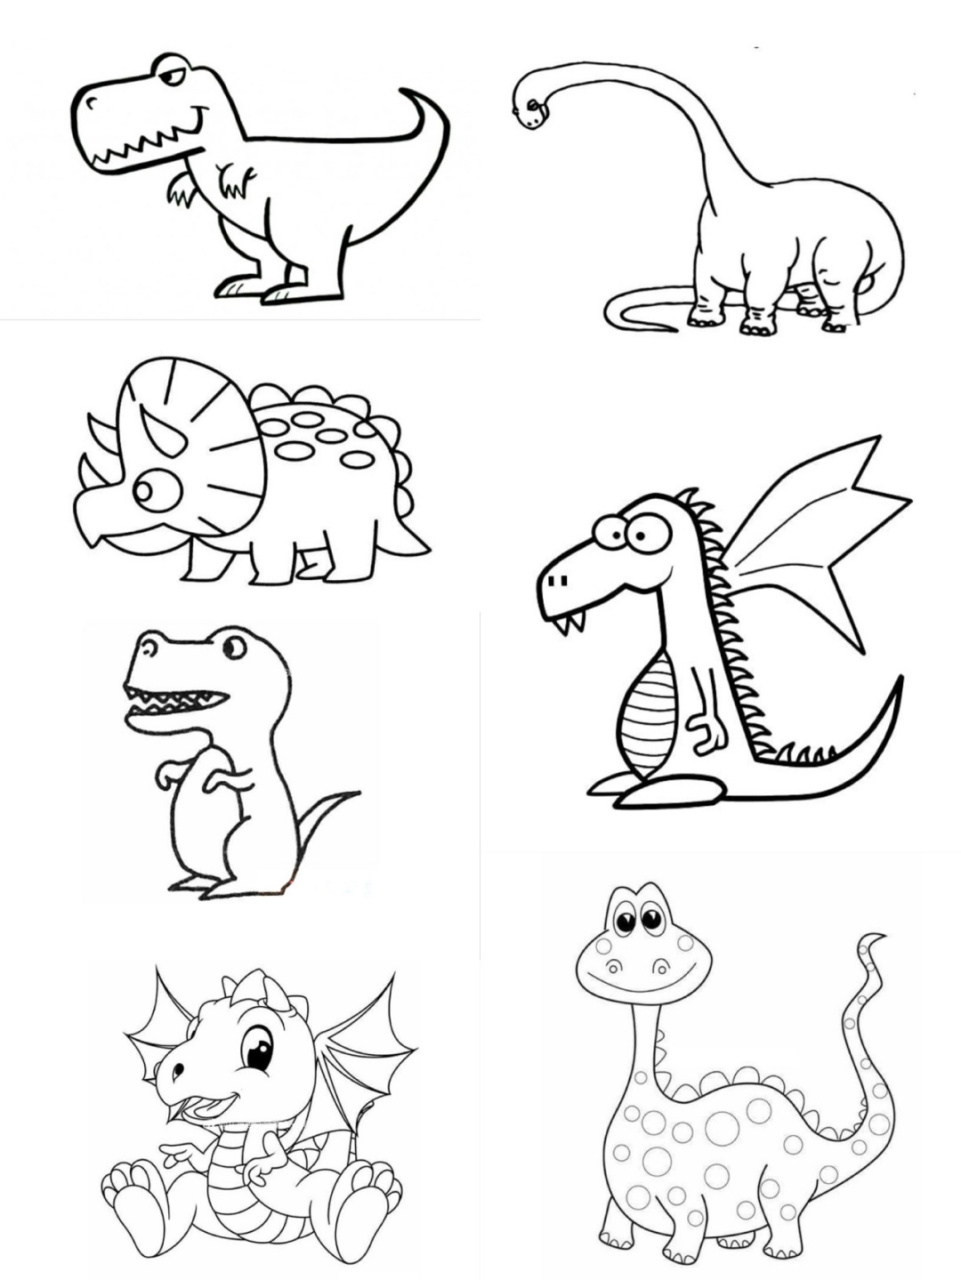 创意美术 儿童画 一大波小恐龙来啦,快来领取,简笔画素材大全 恐龙